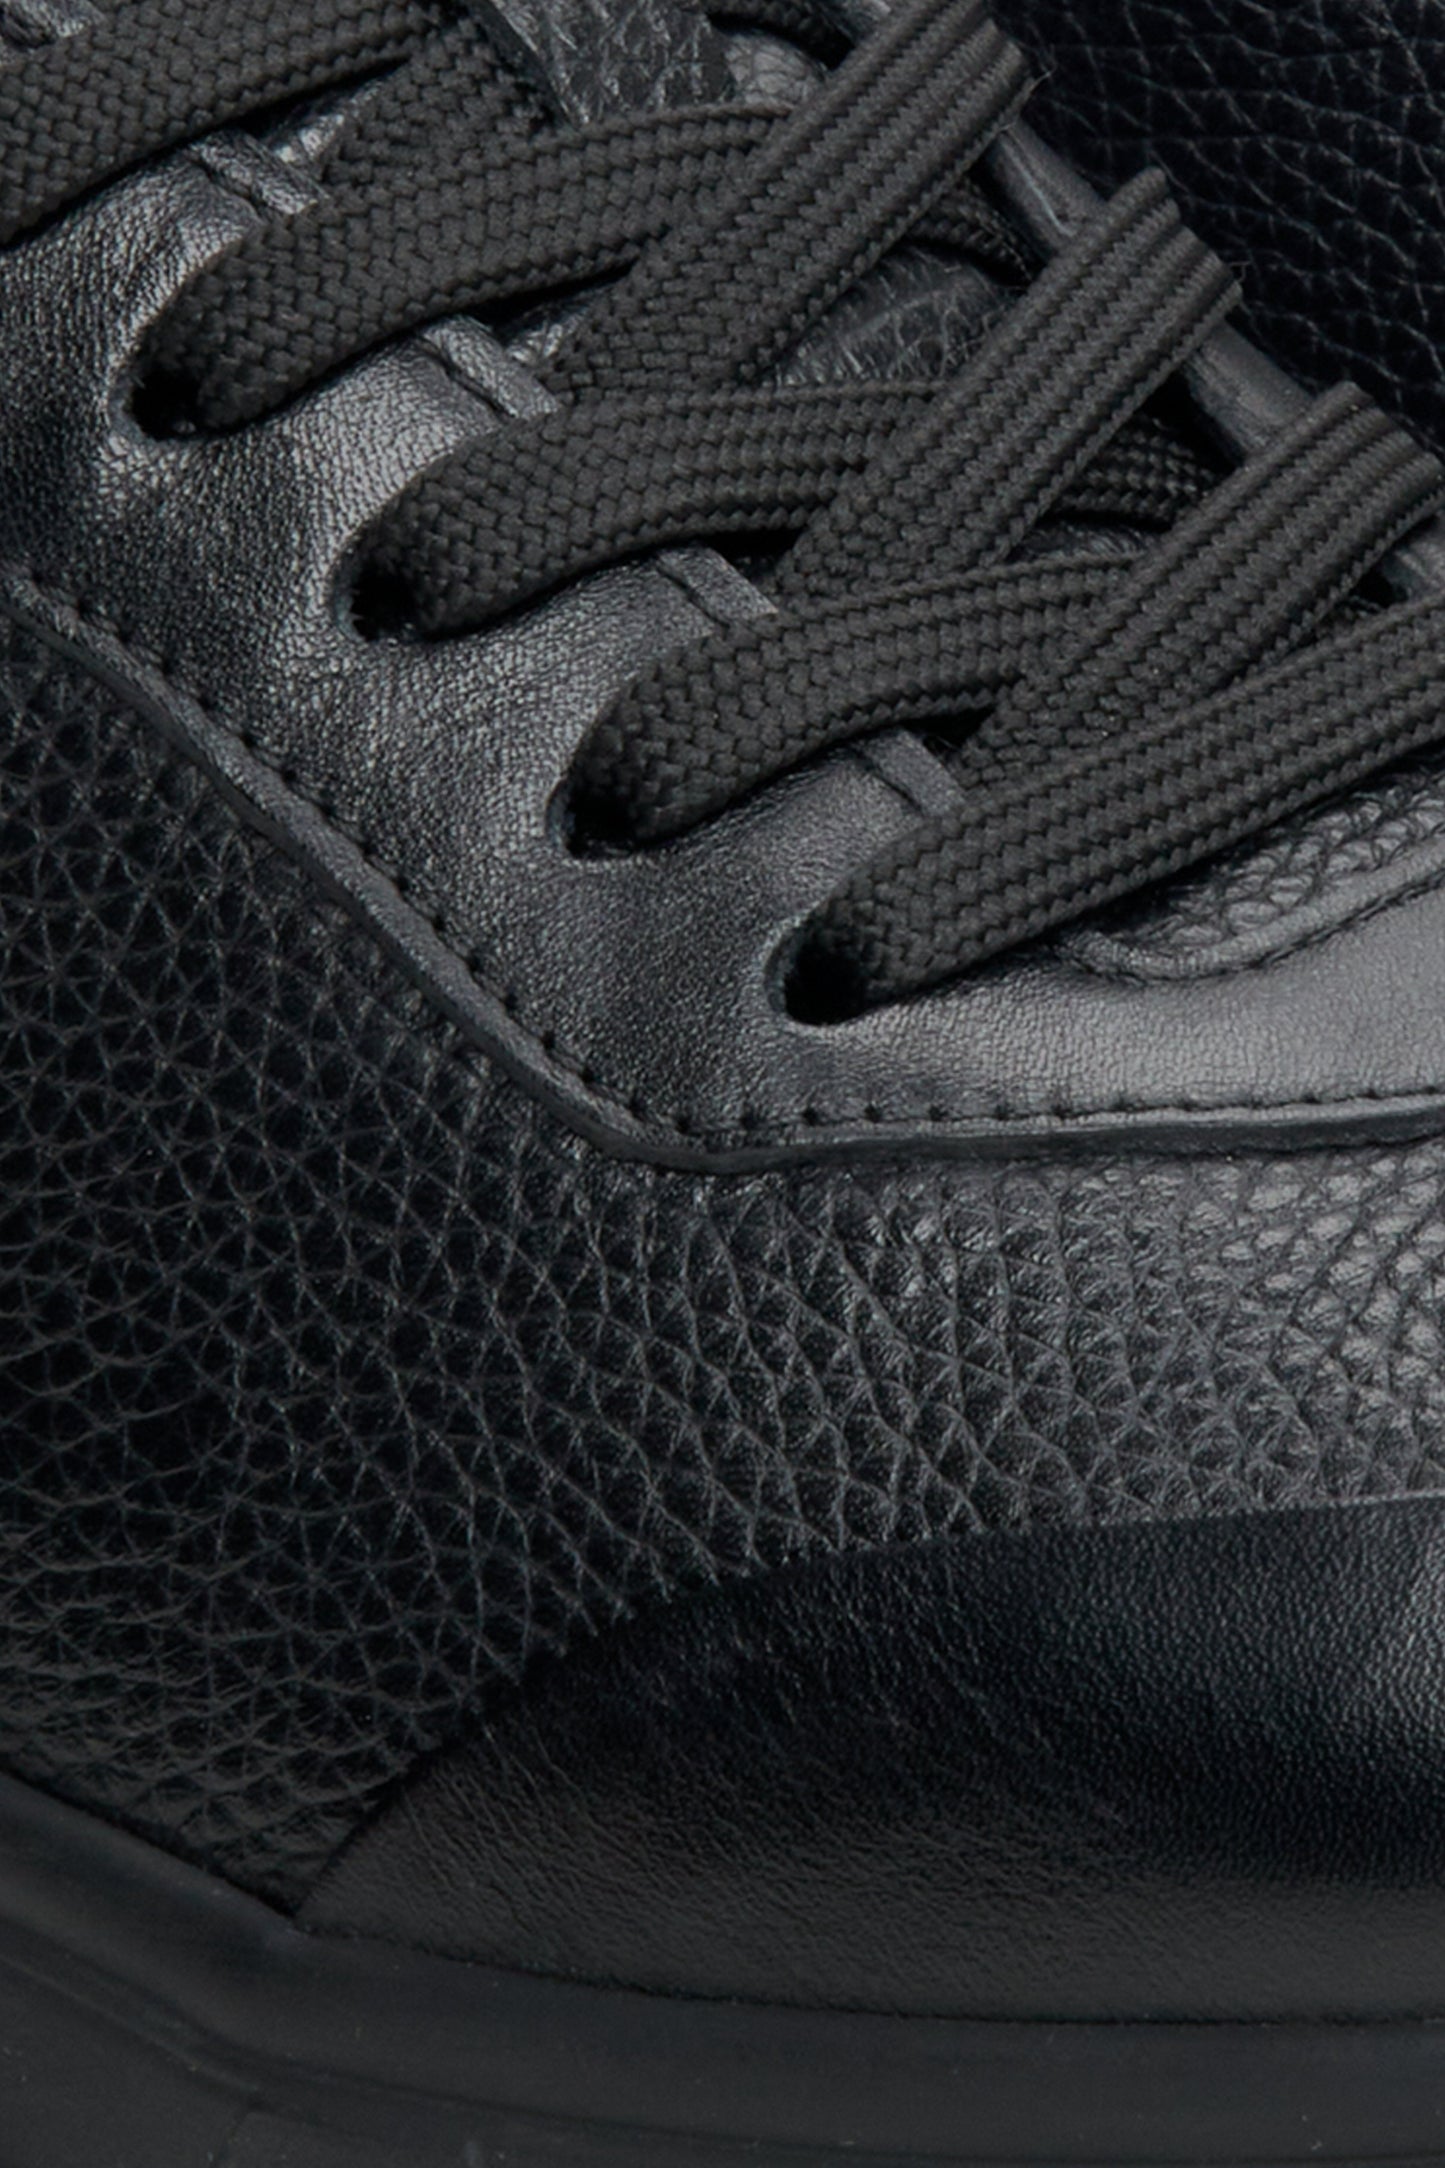 Skórzane, miękkie sneakersy męskie w kolorze czarnym Estro - zbliżenie na system sznurowania.